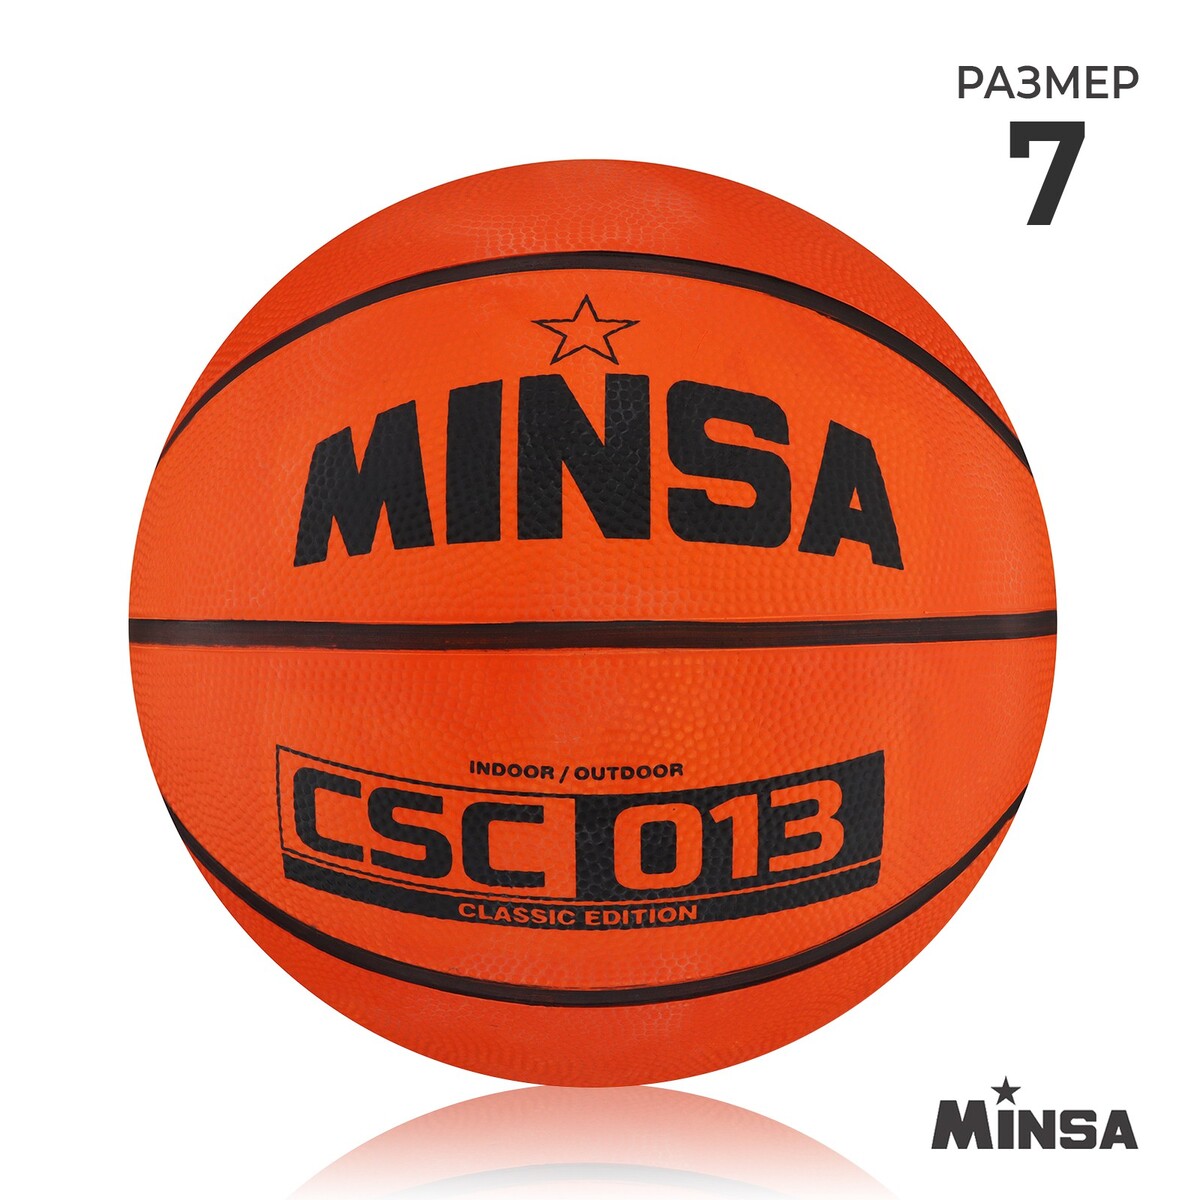 фото Мяч баскетбольный minsa csc 013, пвх, клееный, 8 панелей, р. 7